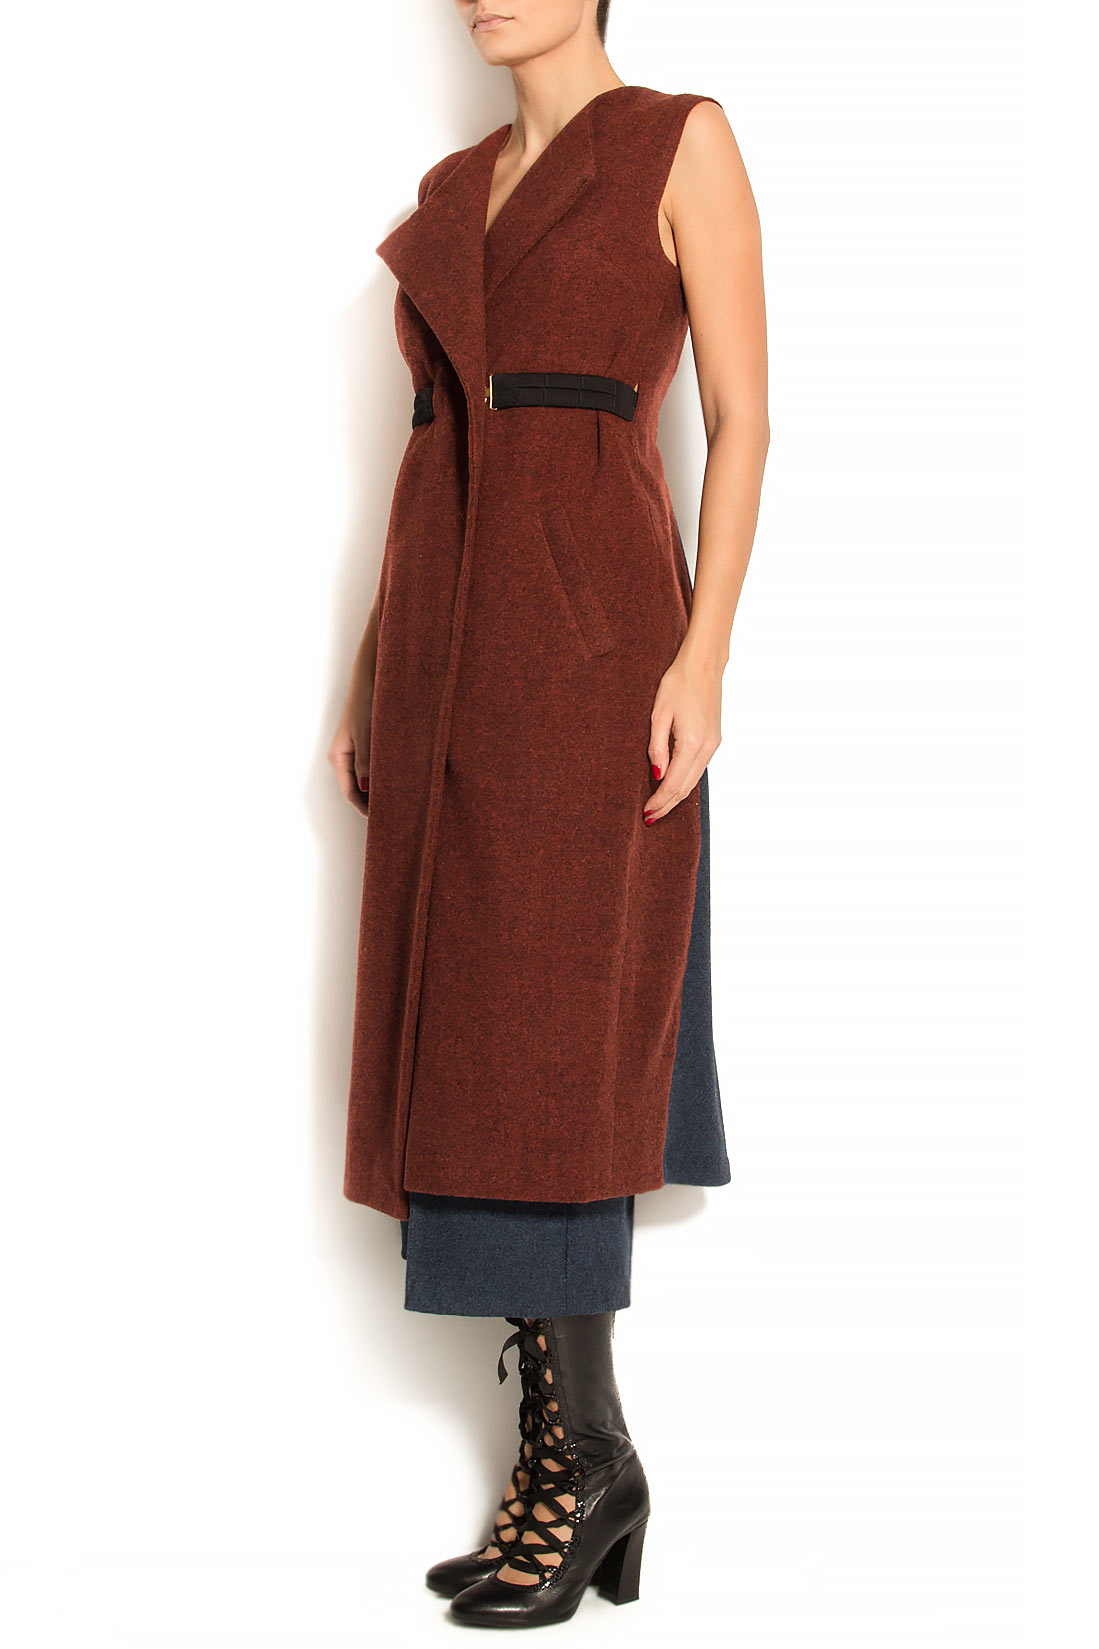 Vesta tip rochie din lana in doua culori ATU Body Couture imagine 1